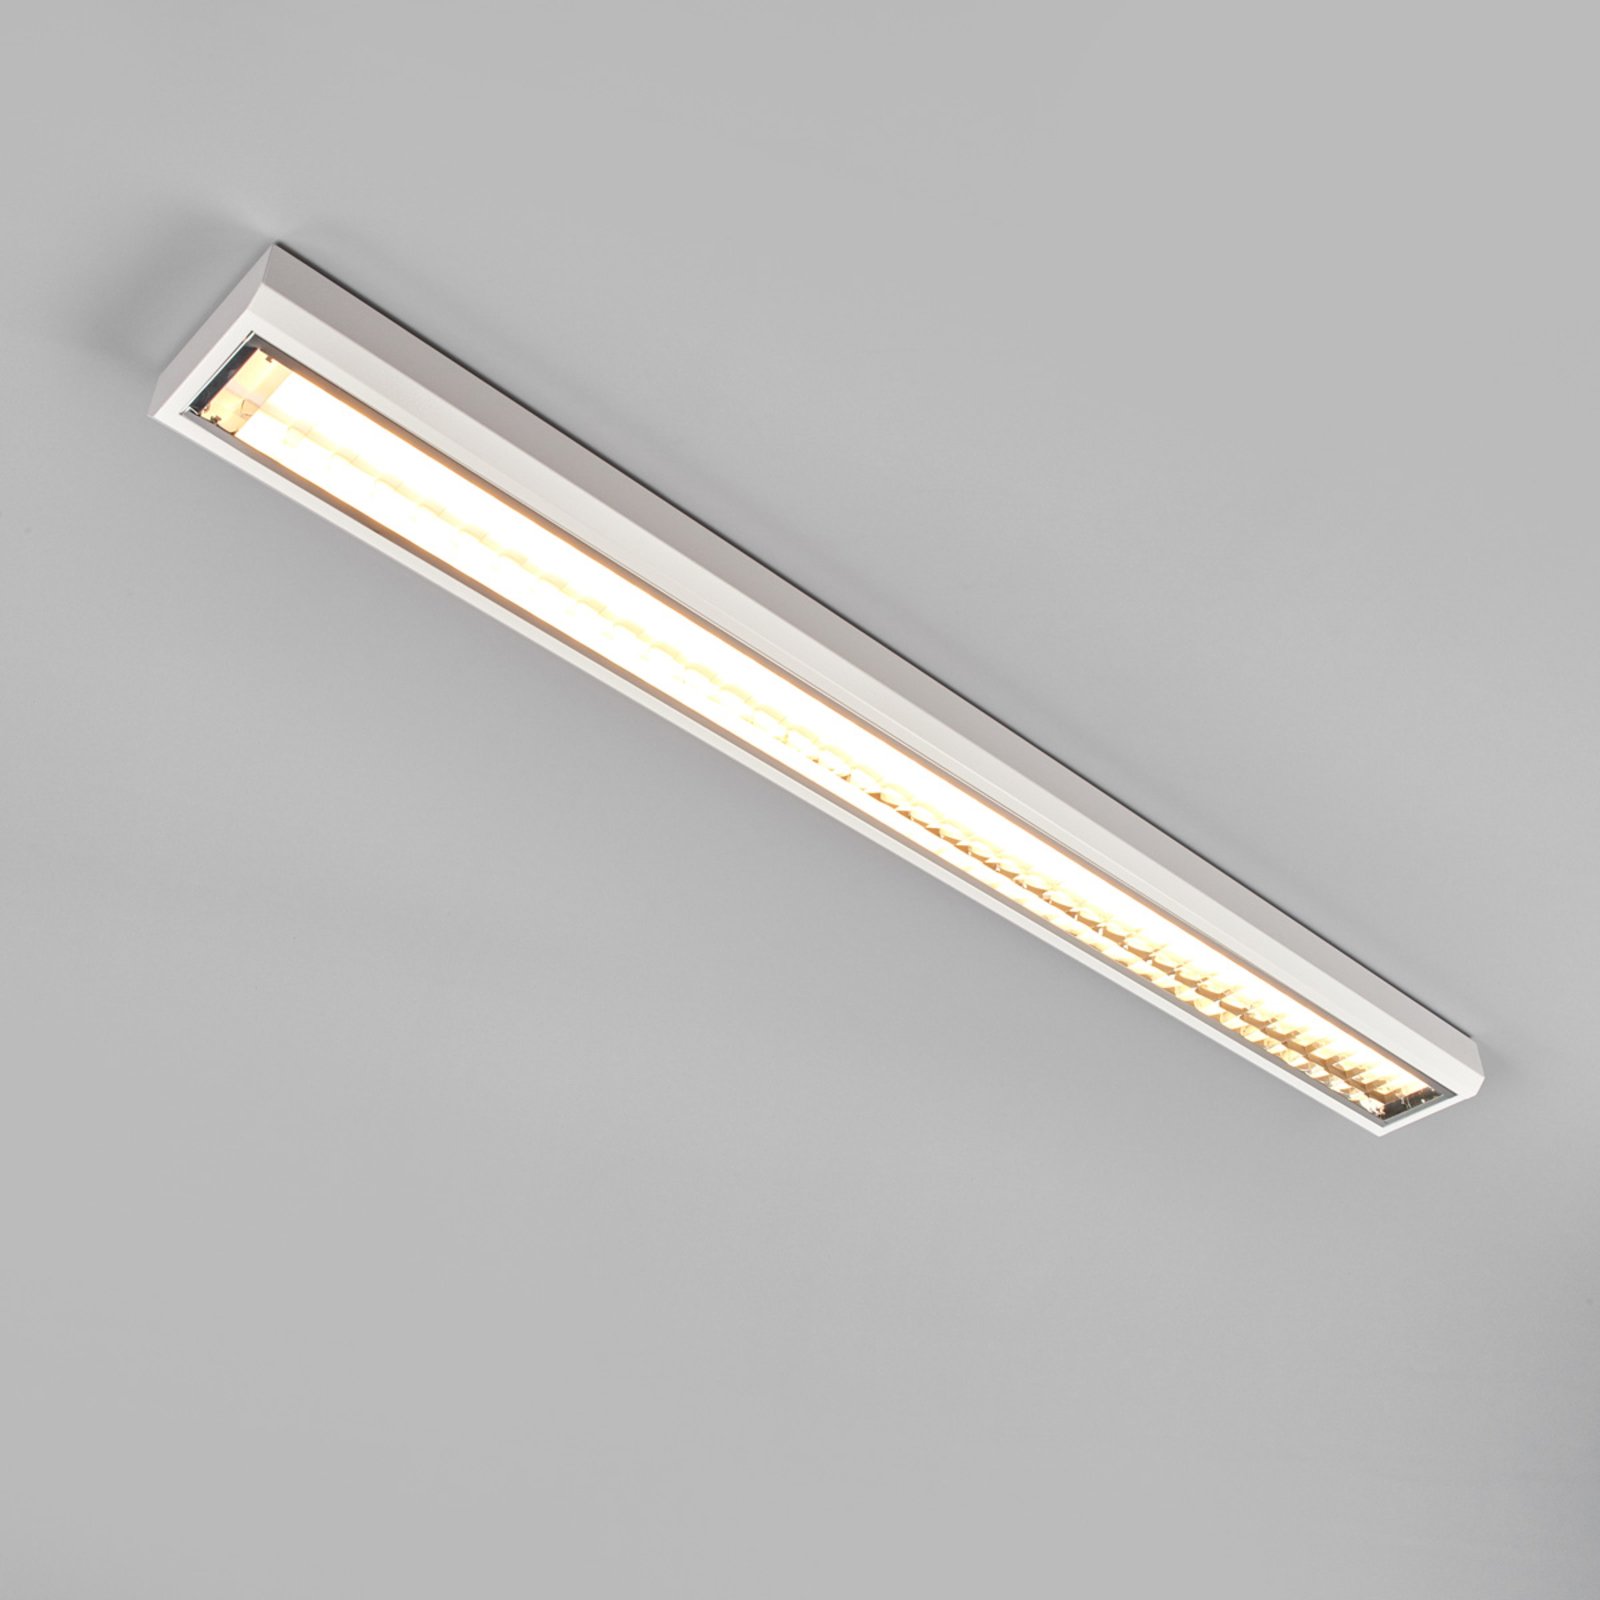 LED louvre light for offices, 33 W, 3,000 K